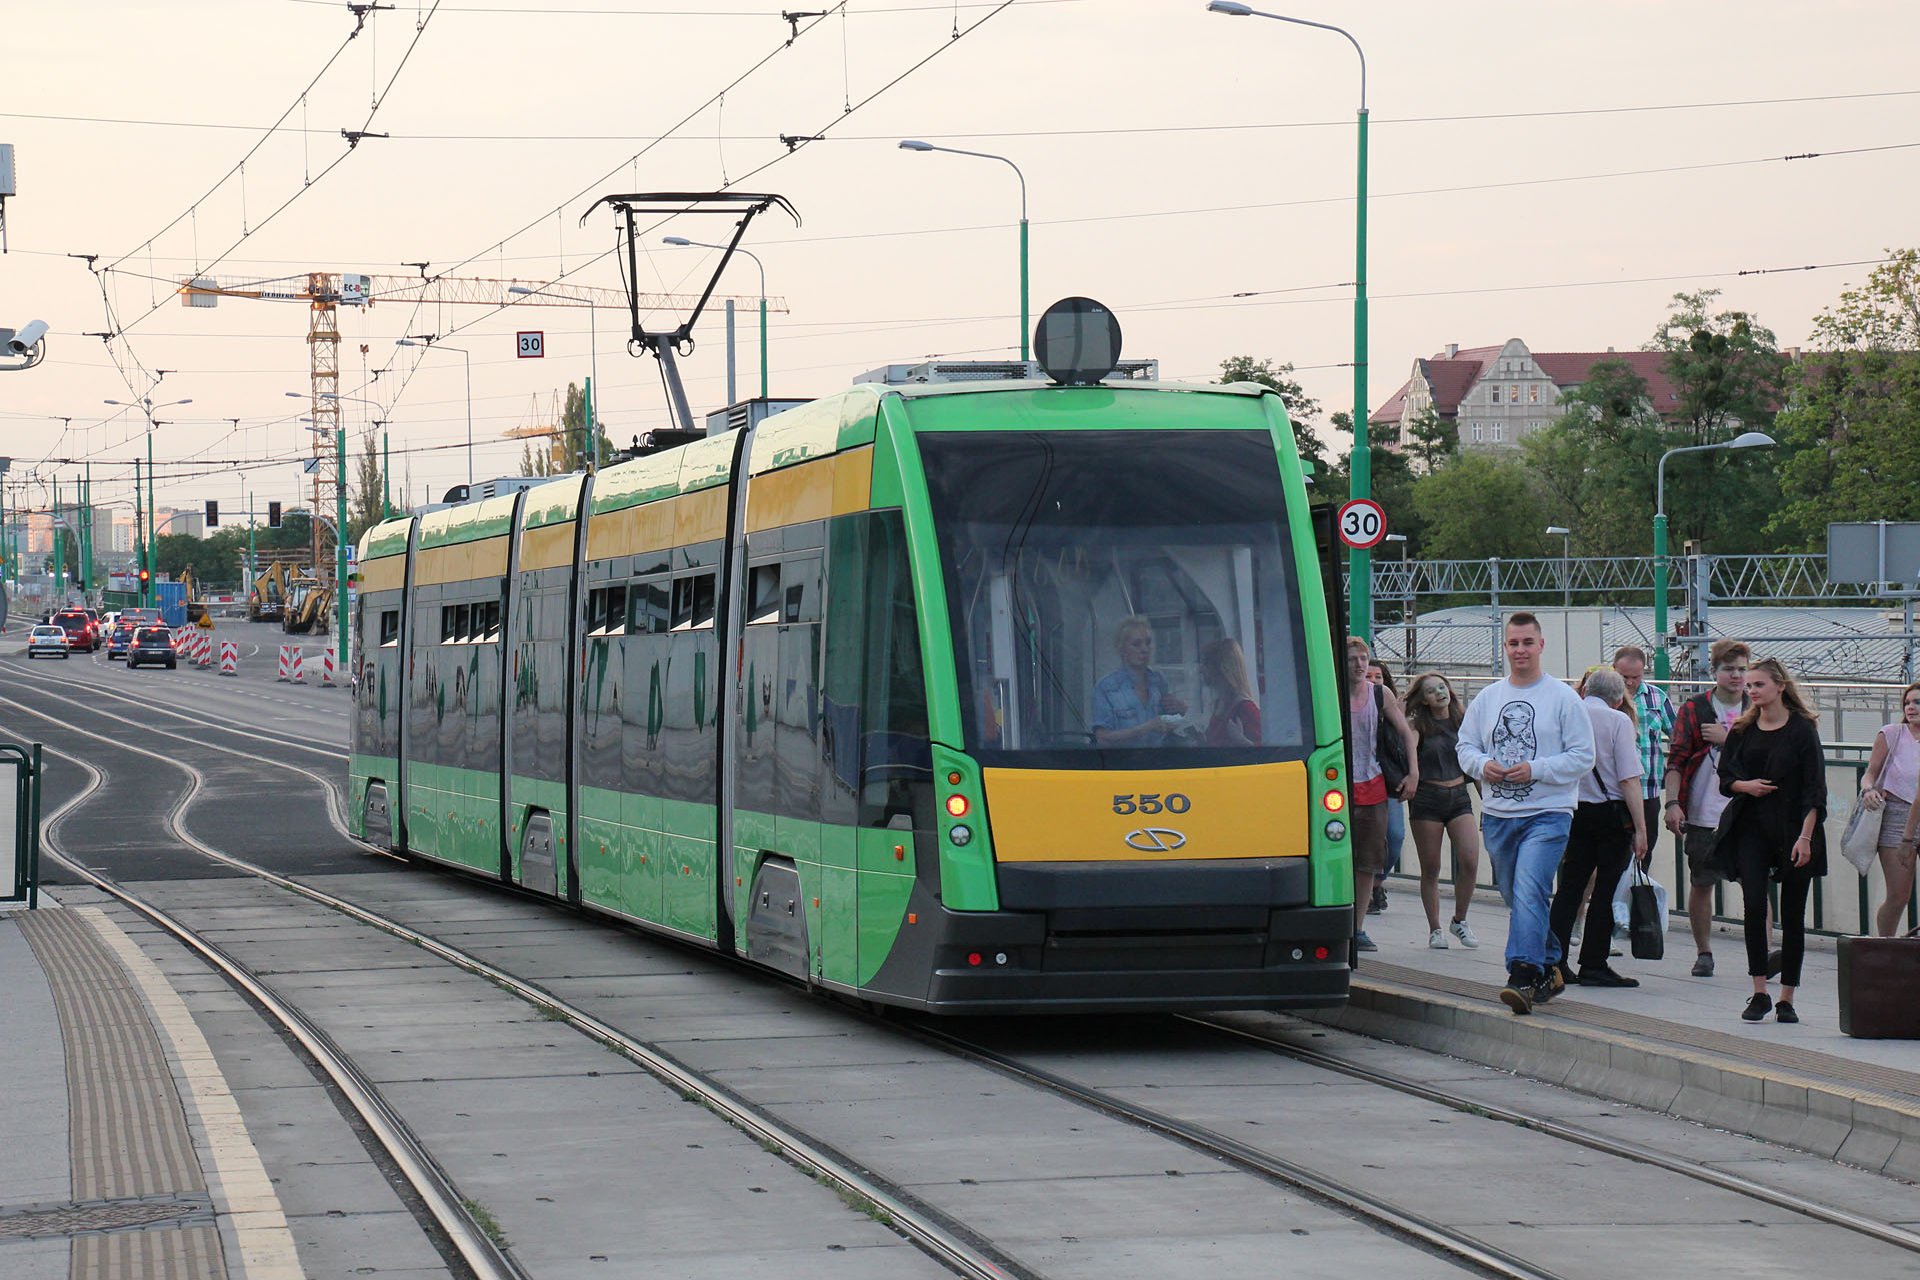 Tramino 550 Die Straßenbahnen haben eine Länge von 32,03 m und eine Breite von 2,40 m. The trams are 32.03 m long and 2.40 m wide.